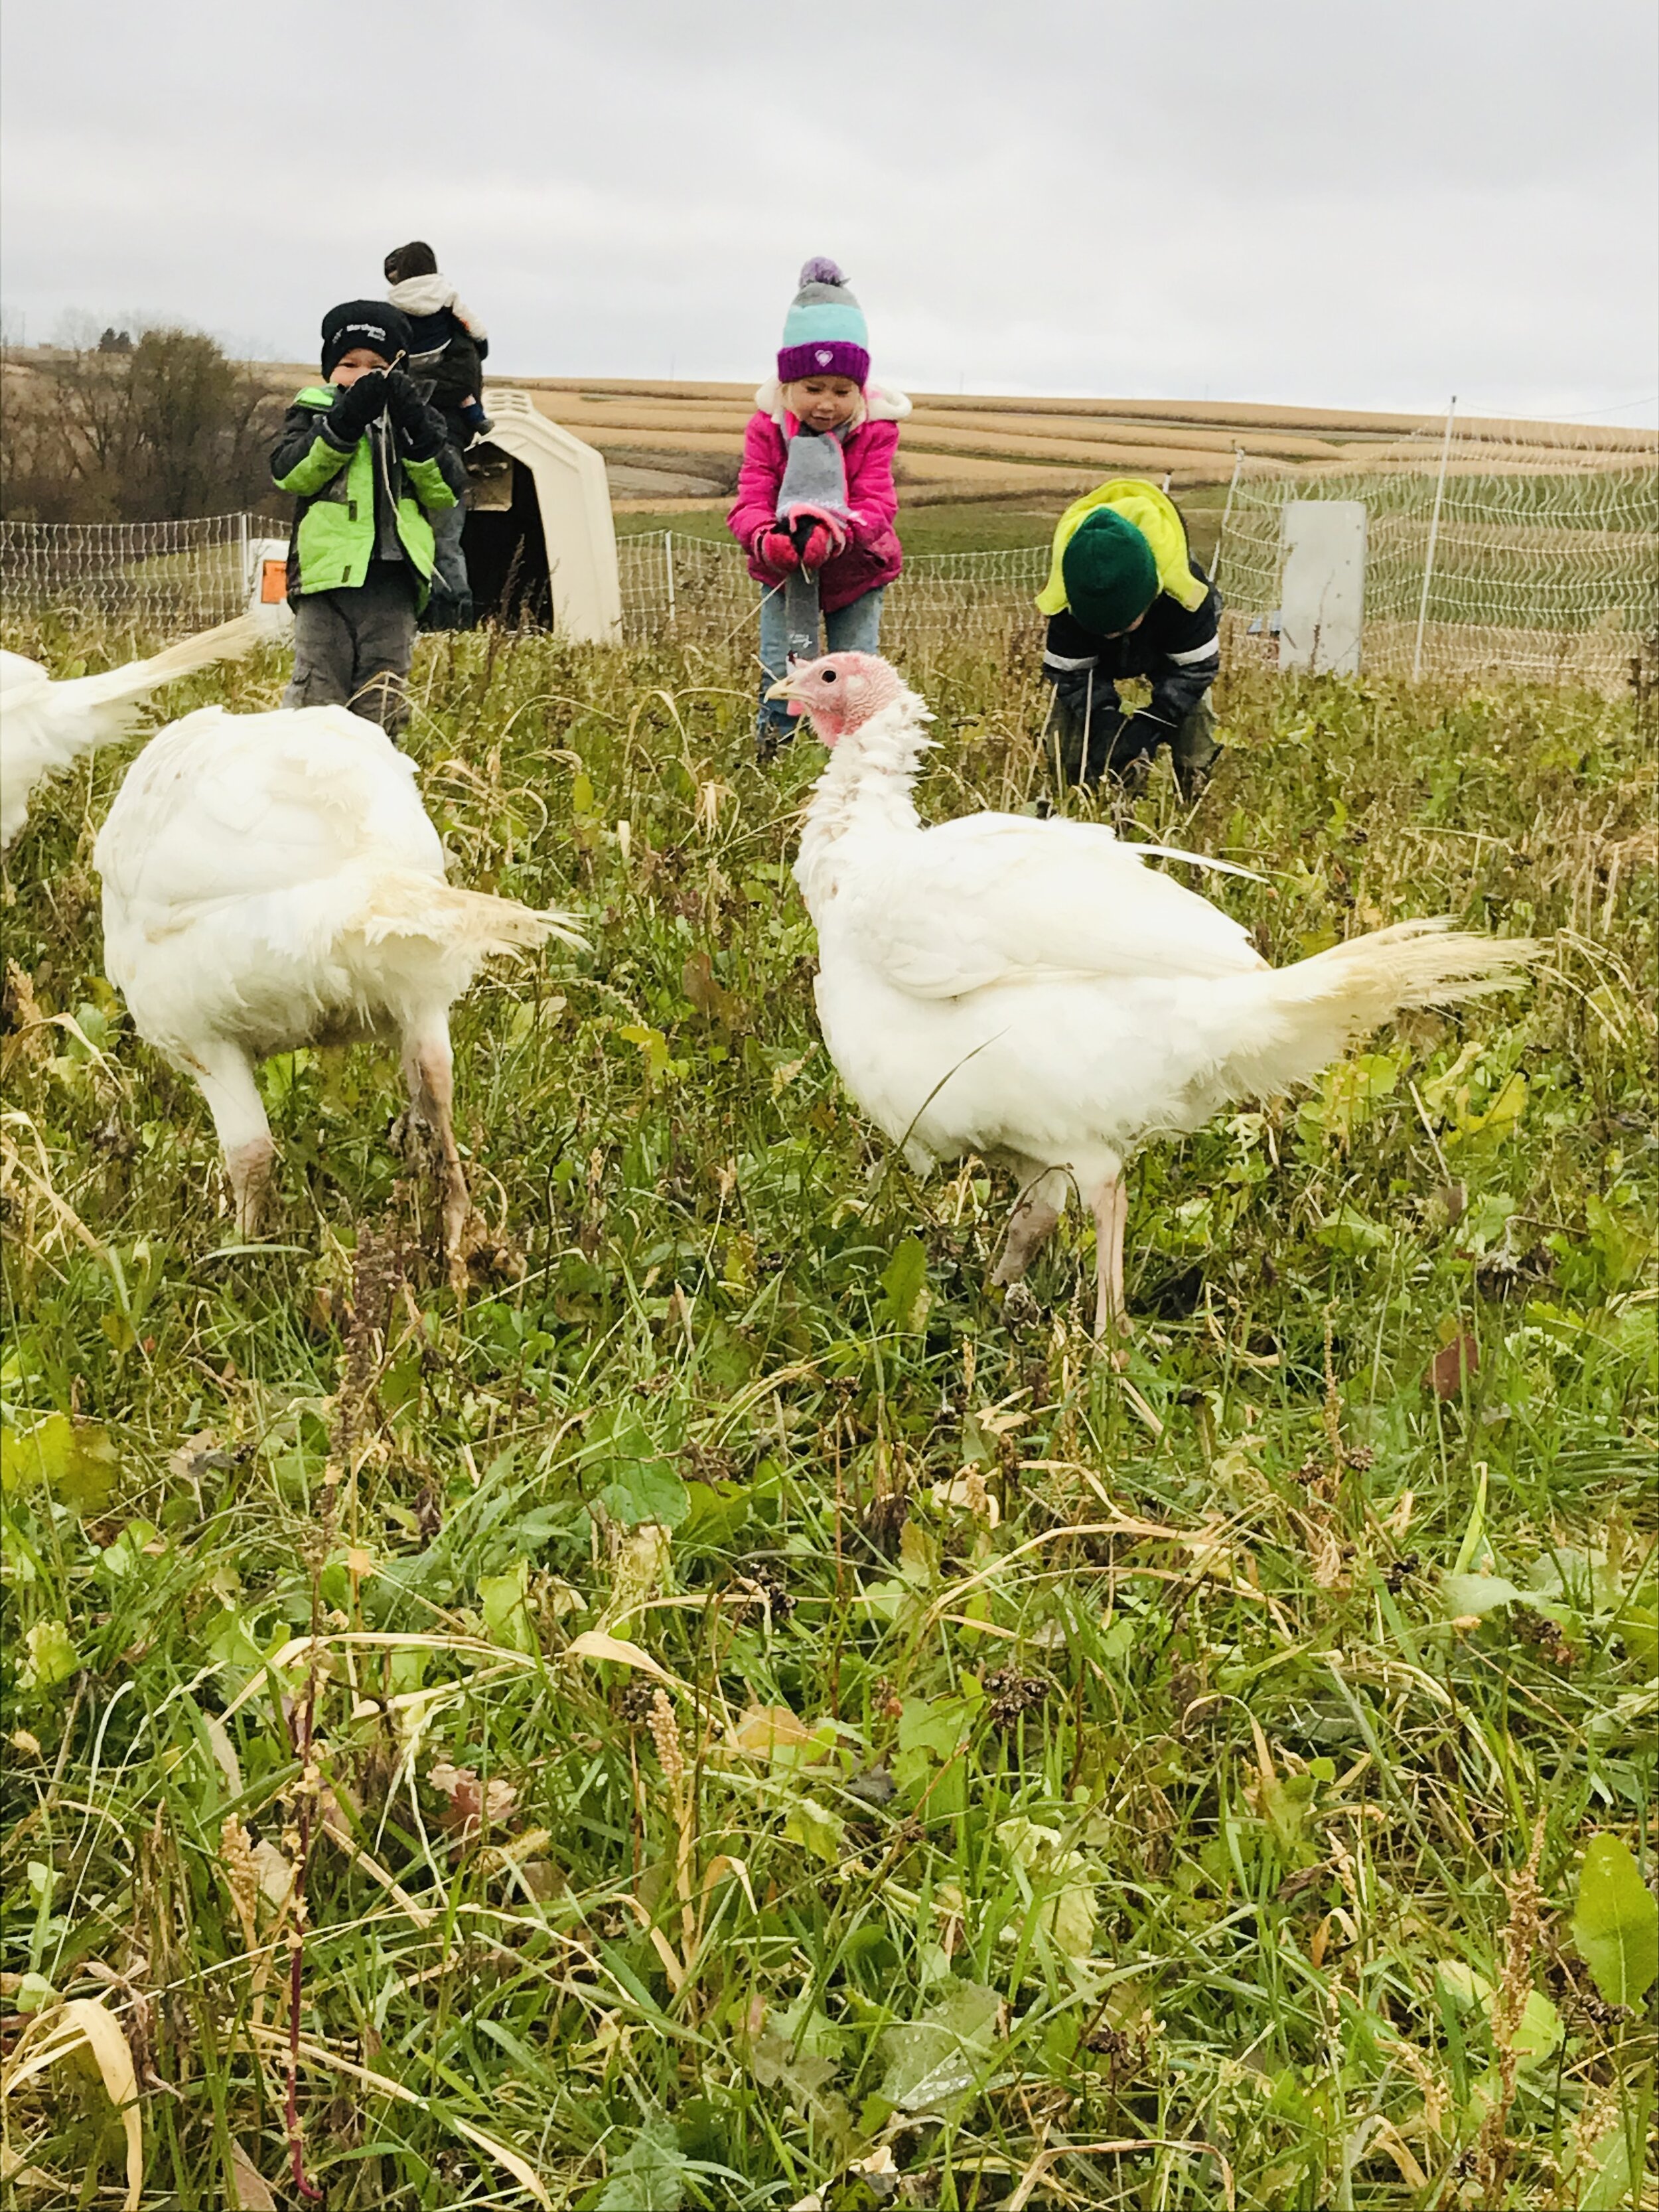 Kids in field with turkeys